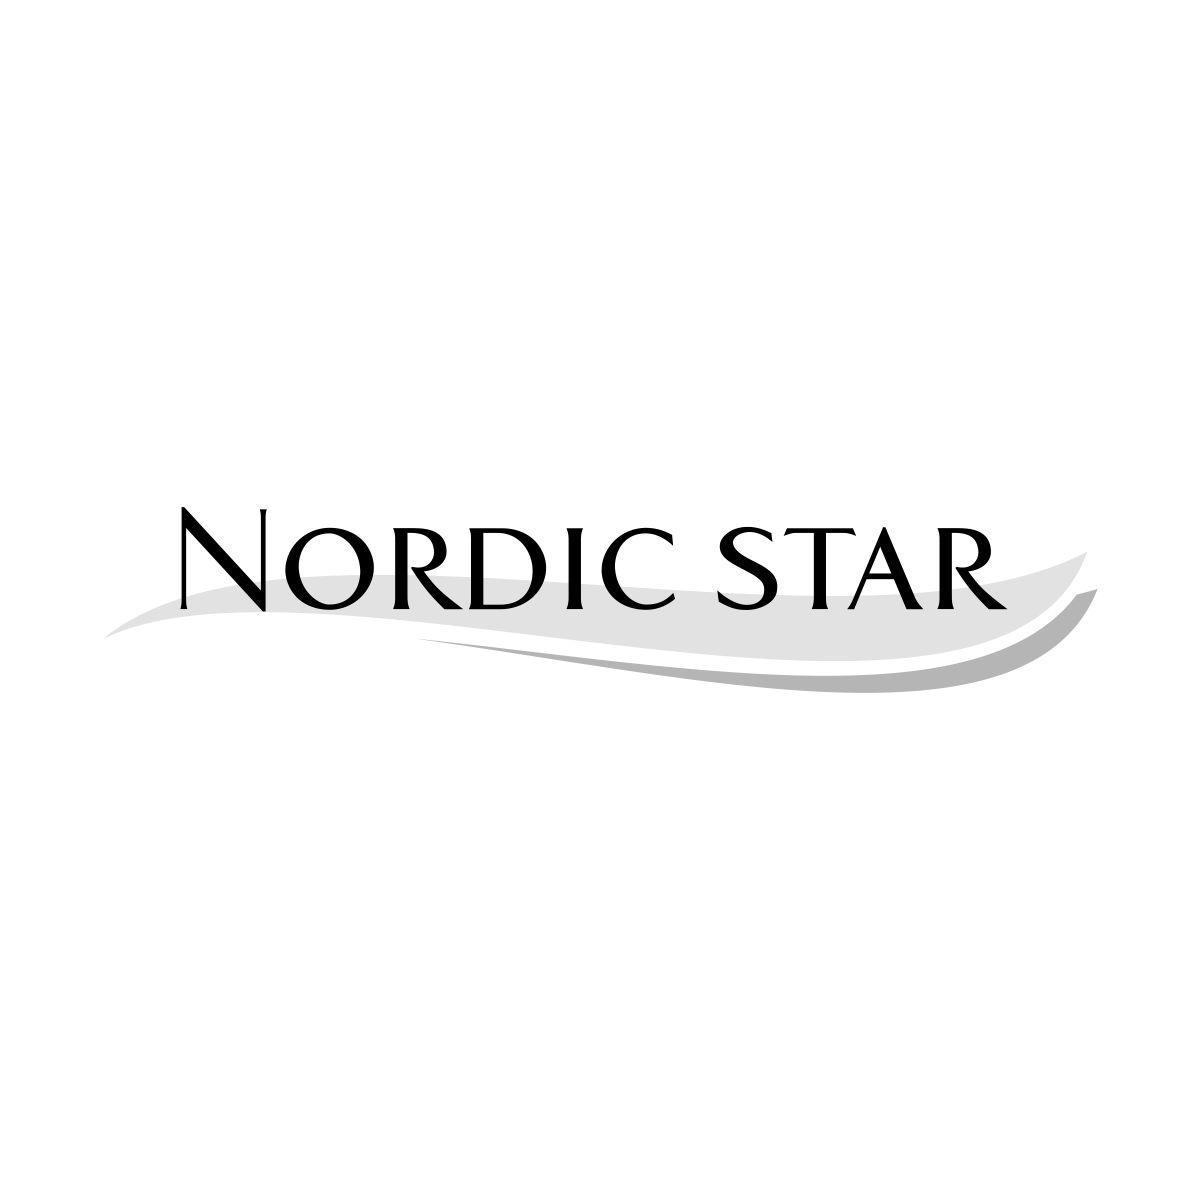 NORDIC STAR